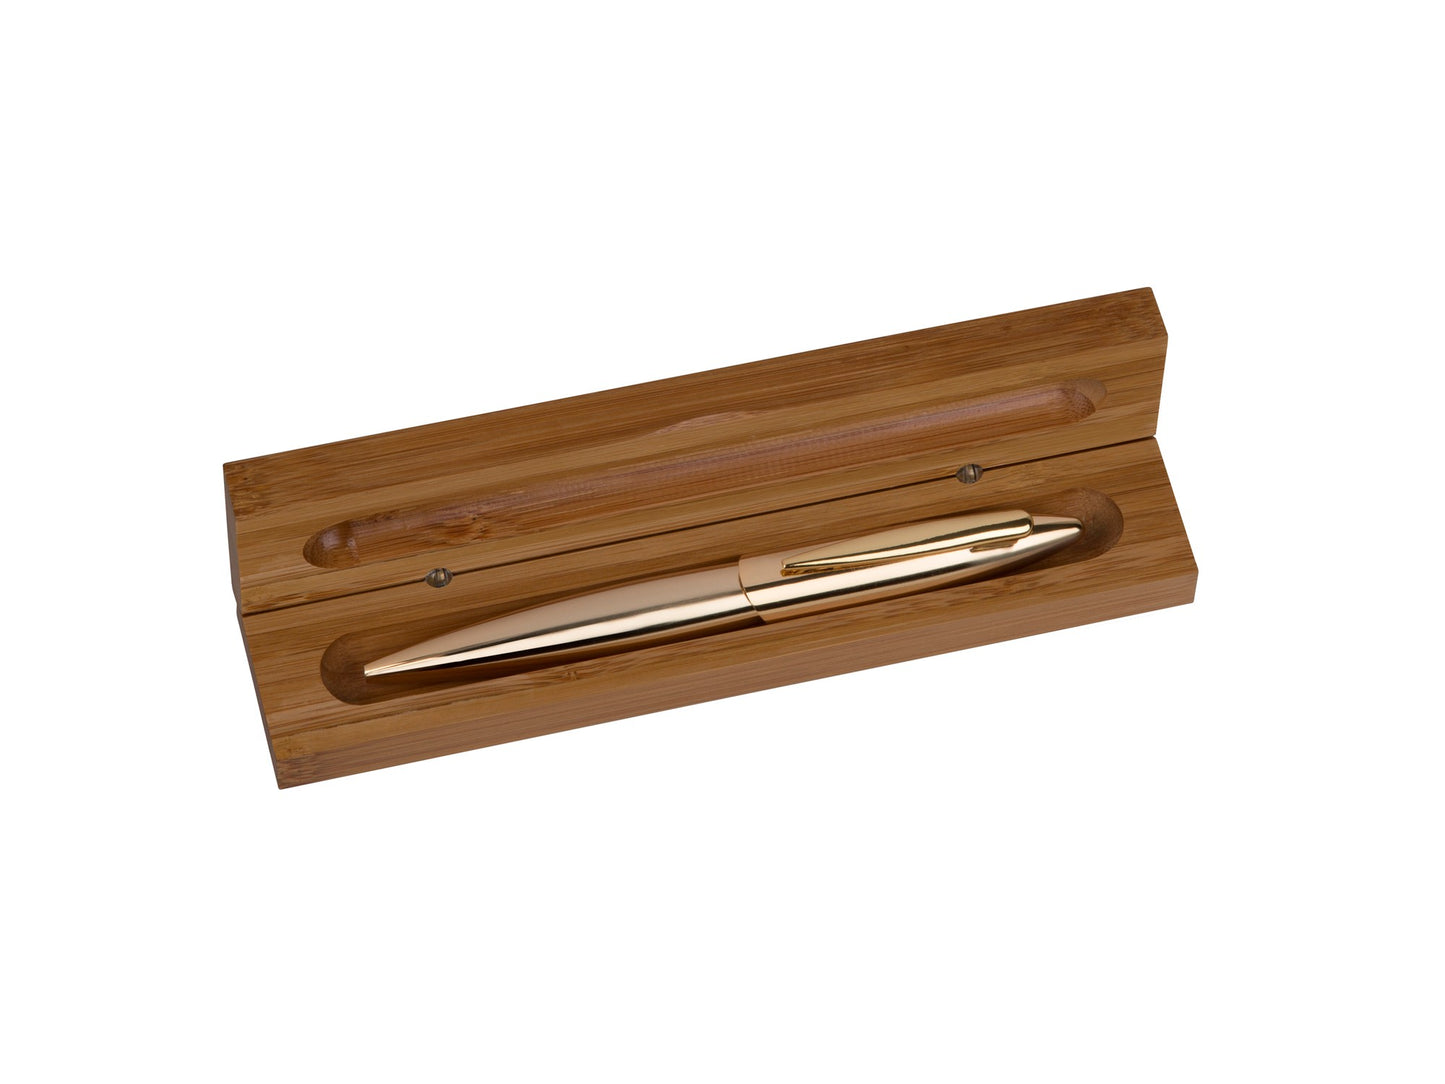 Wooden Pen Case